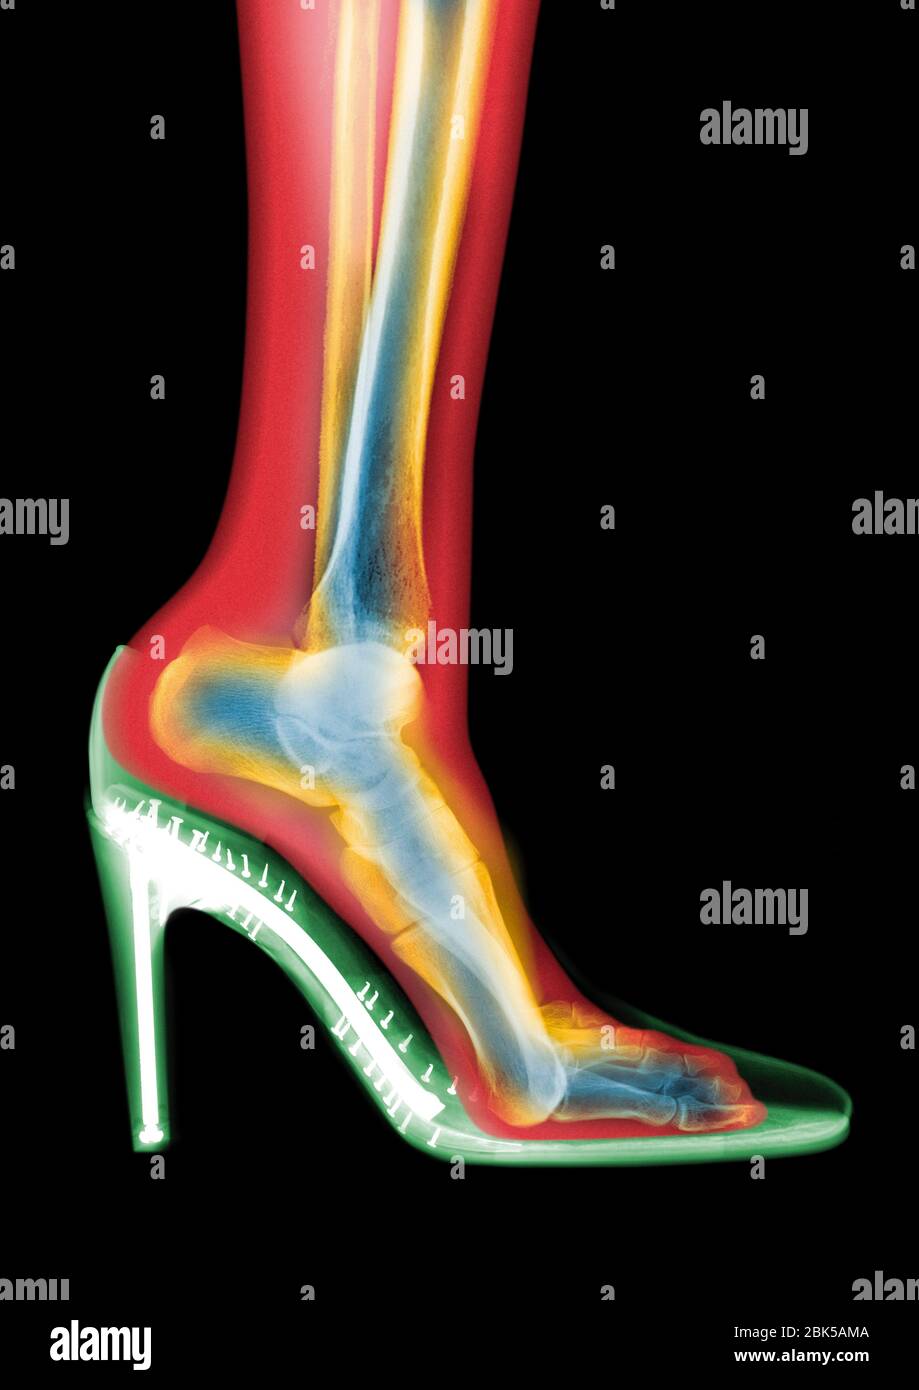 Leg in stiletto shoe, coloured MRI style X-ray. Stock Photo